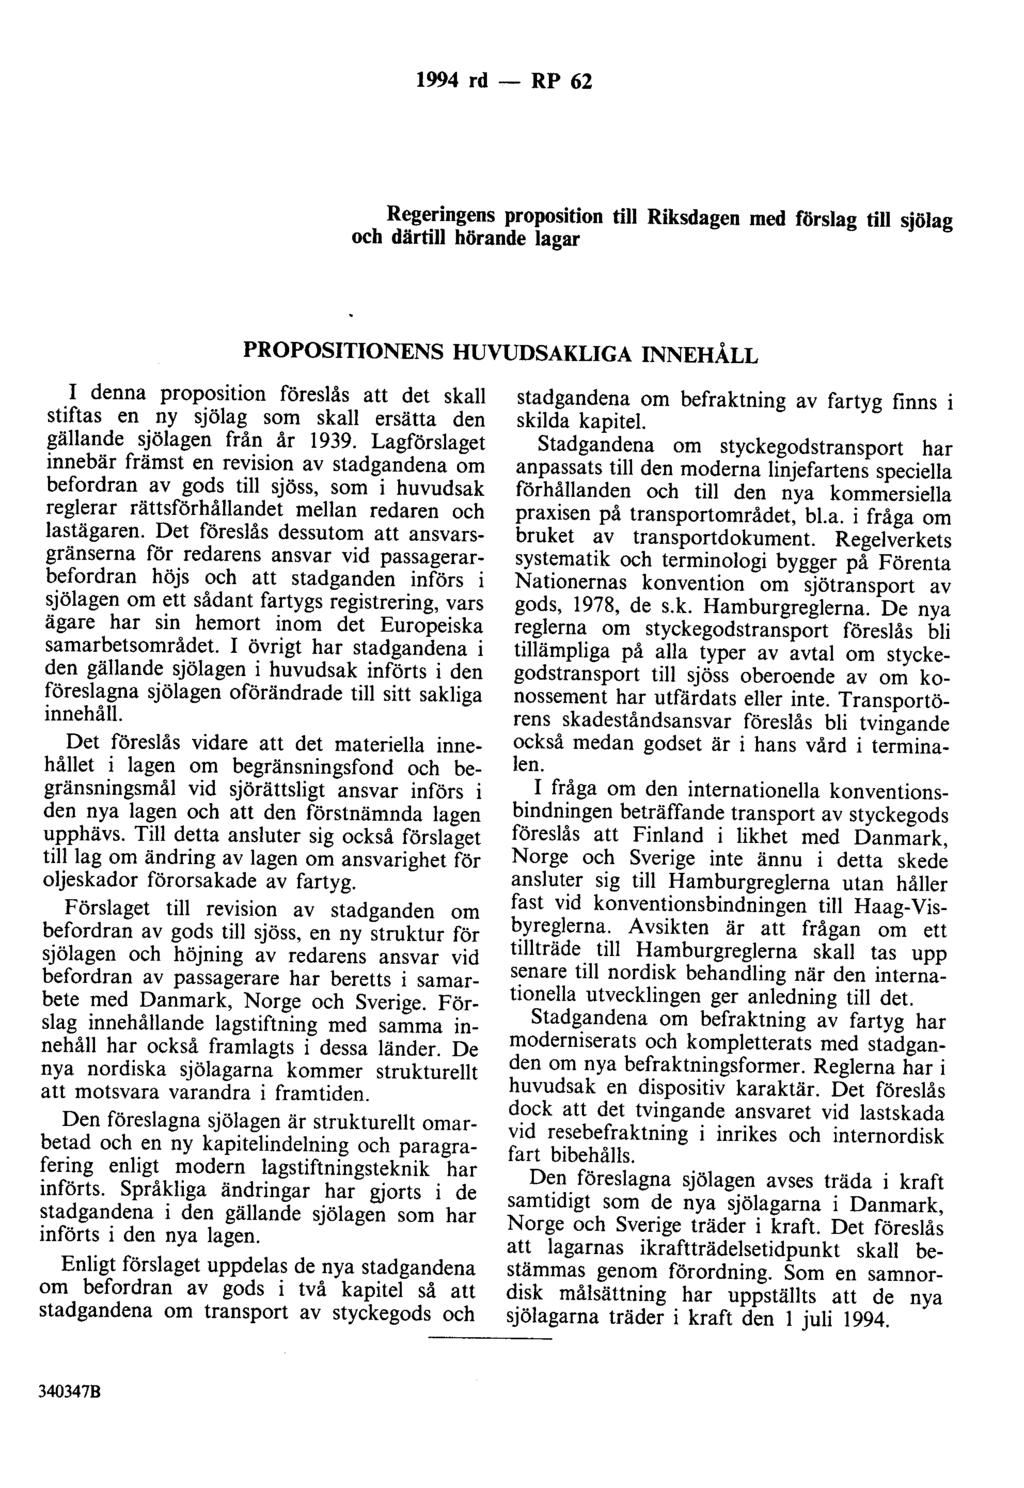 1994 rd- RP 62 Regeringens proposition till Riksdagen med förslag till sjölag och därtill hörande lagar PROPOSITIONENS HUVUDSAKLIGA INNEHÅLL I denna proposition föreslås att det skall stiftas en ny